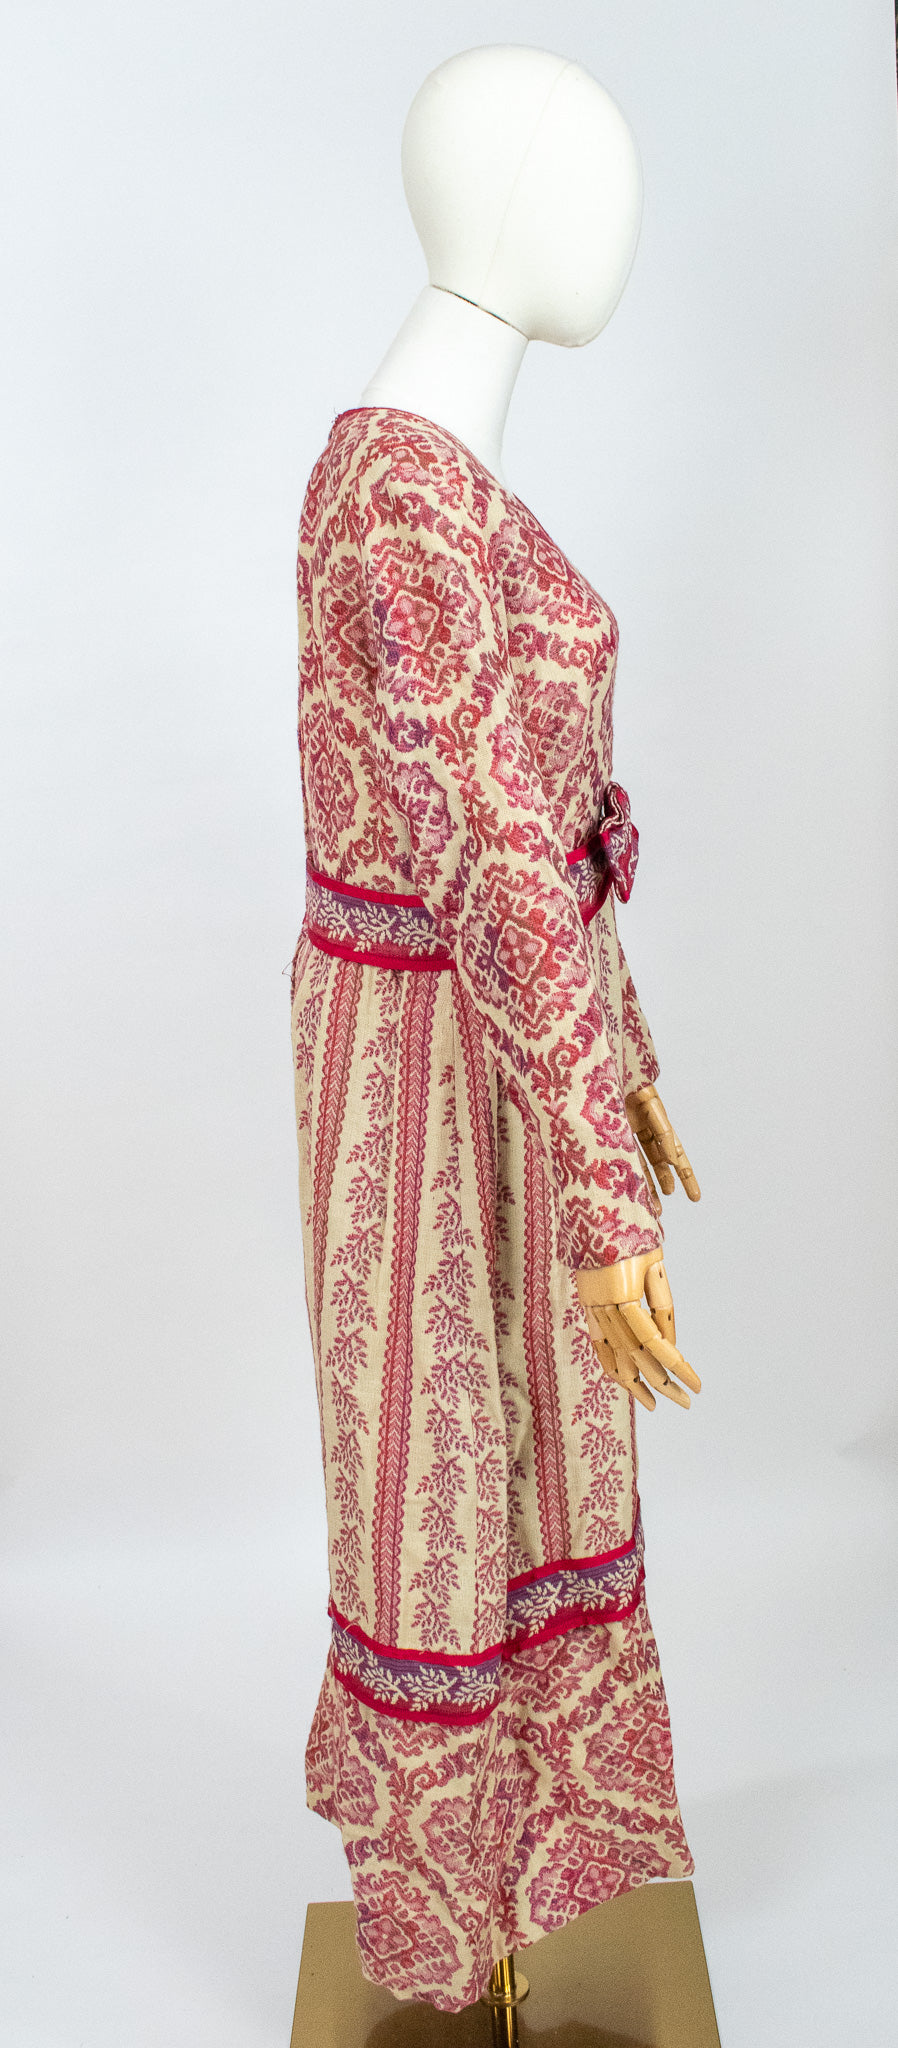 Vintage 1970's Boho Woollen Tapestry Dress by Jo Ellen Couture by Allen Davidson.